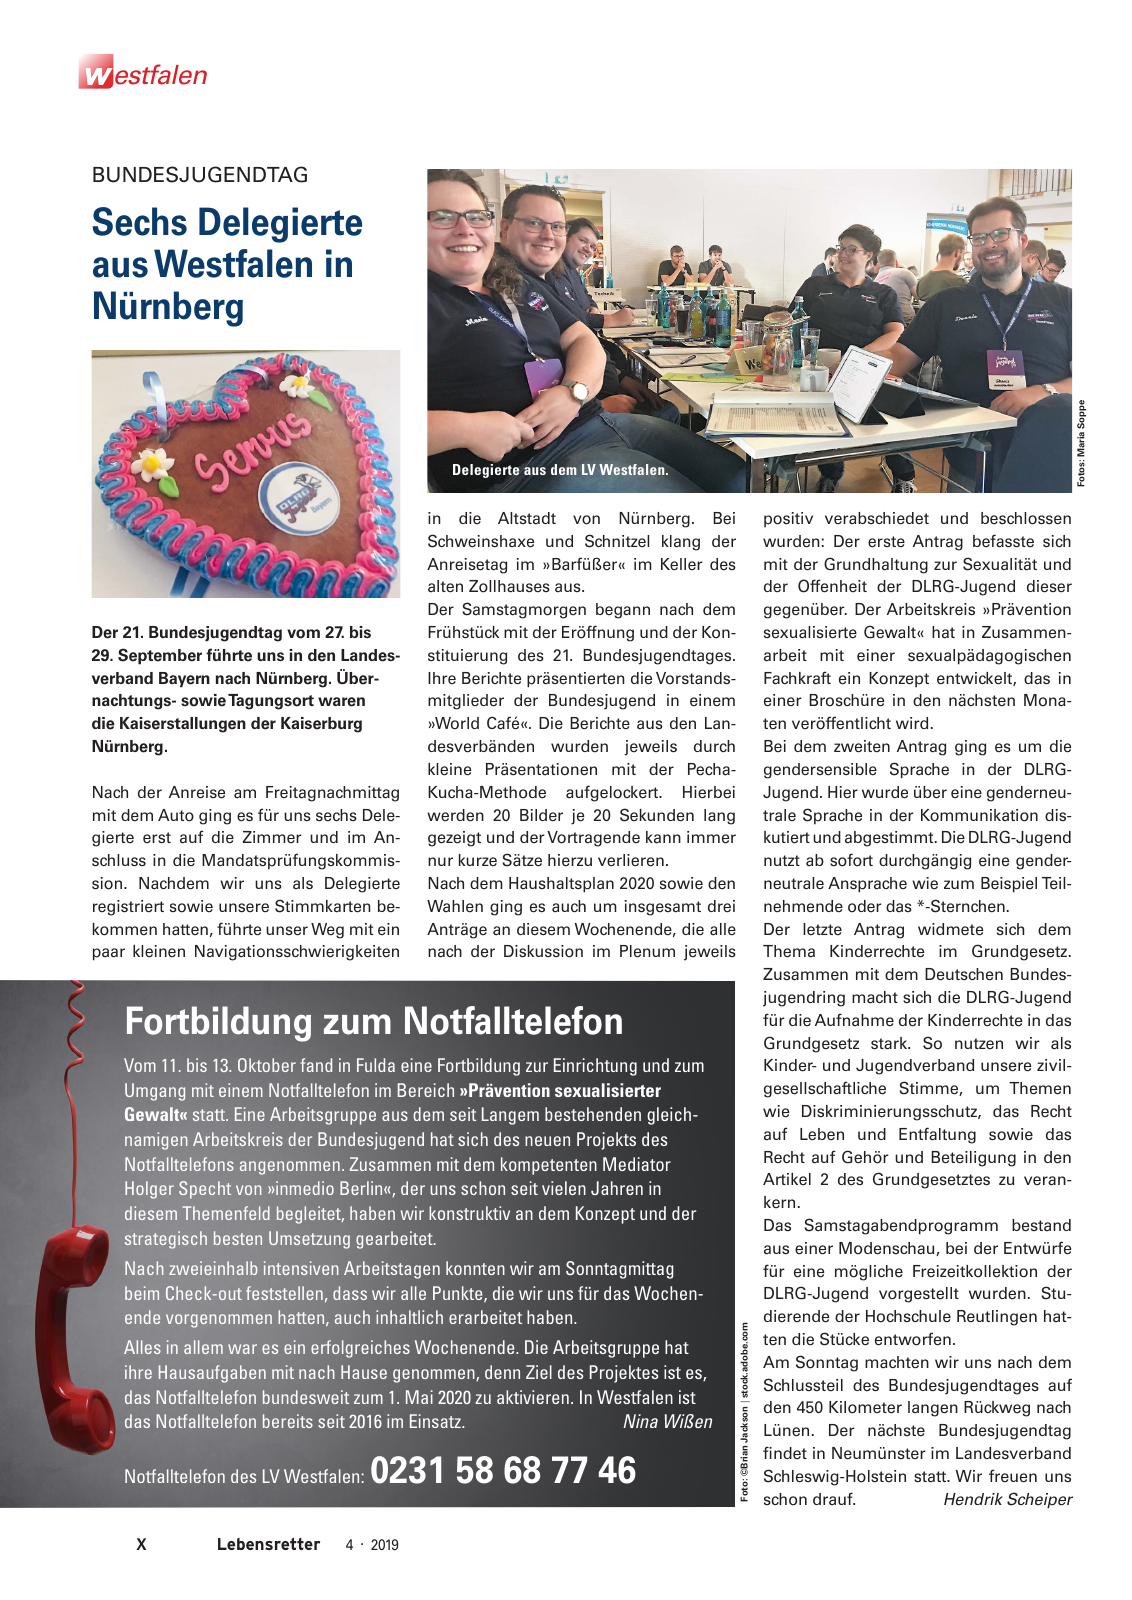 Vorschau Lebensretter 4/2019 -  Westfalen Regionalausgabe Seite 12